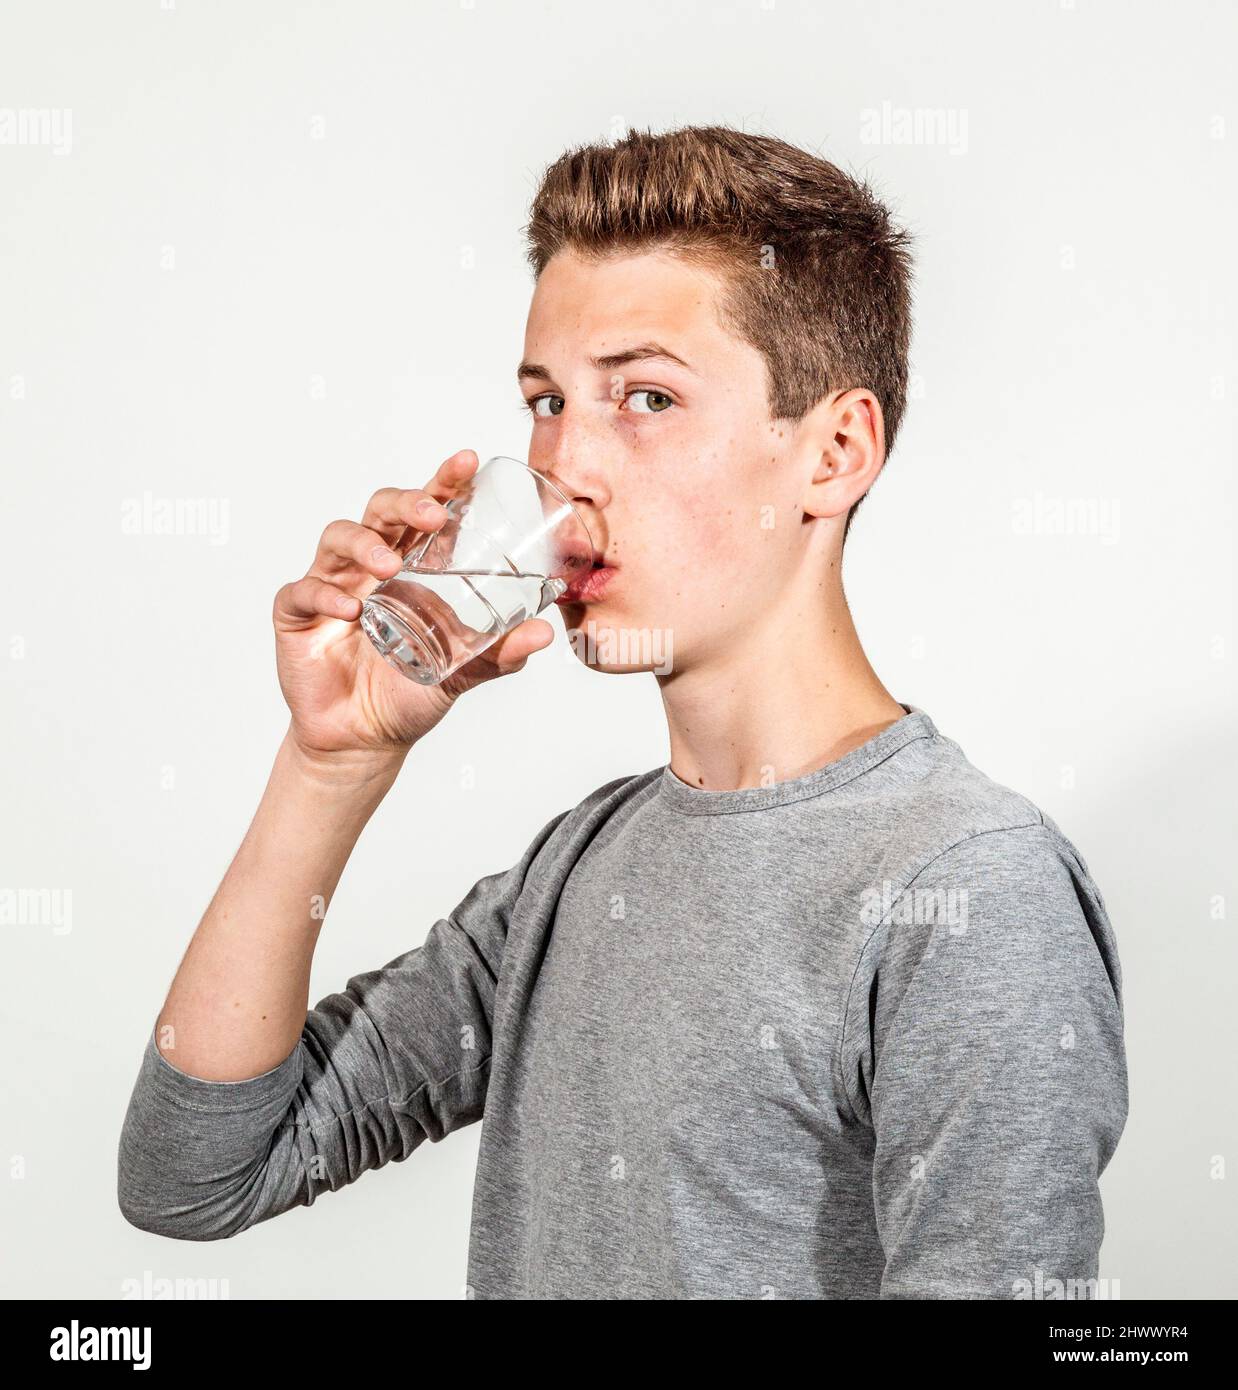 https://c8.alamy.com/comp/2HWWYR4/portrait-of-attractive-caucasian-teenage-boy-drinking-water-2HWWYR4.jpg